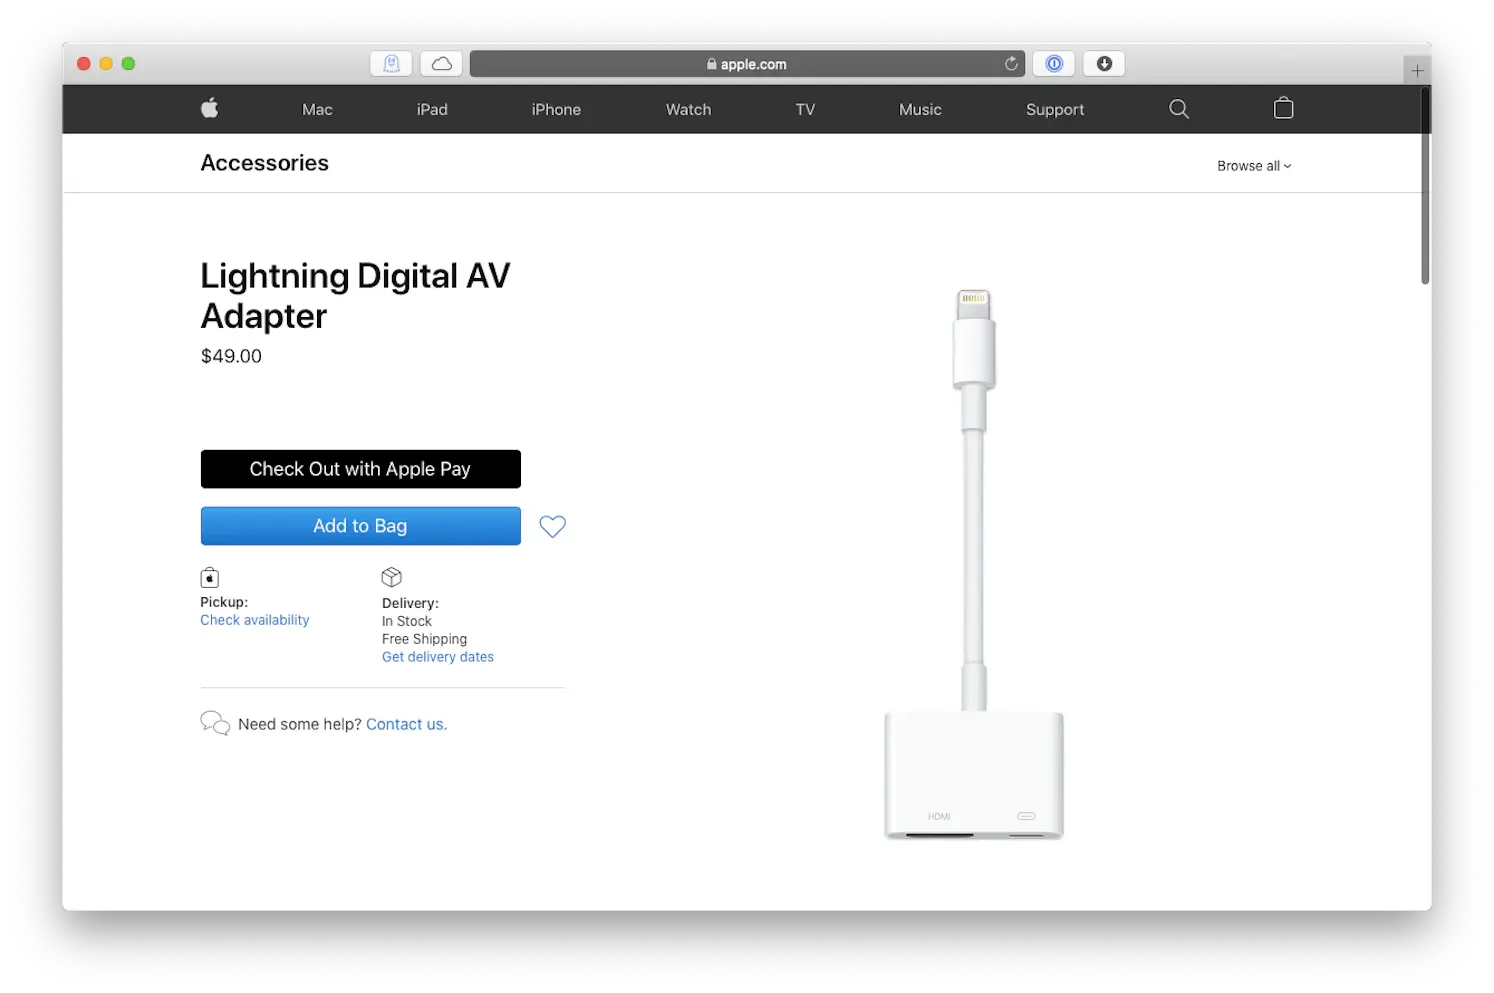 Lightning Digital AV Adapter by Apple